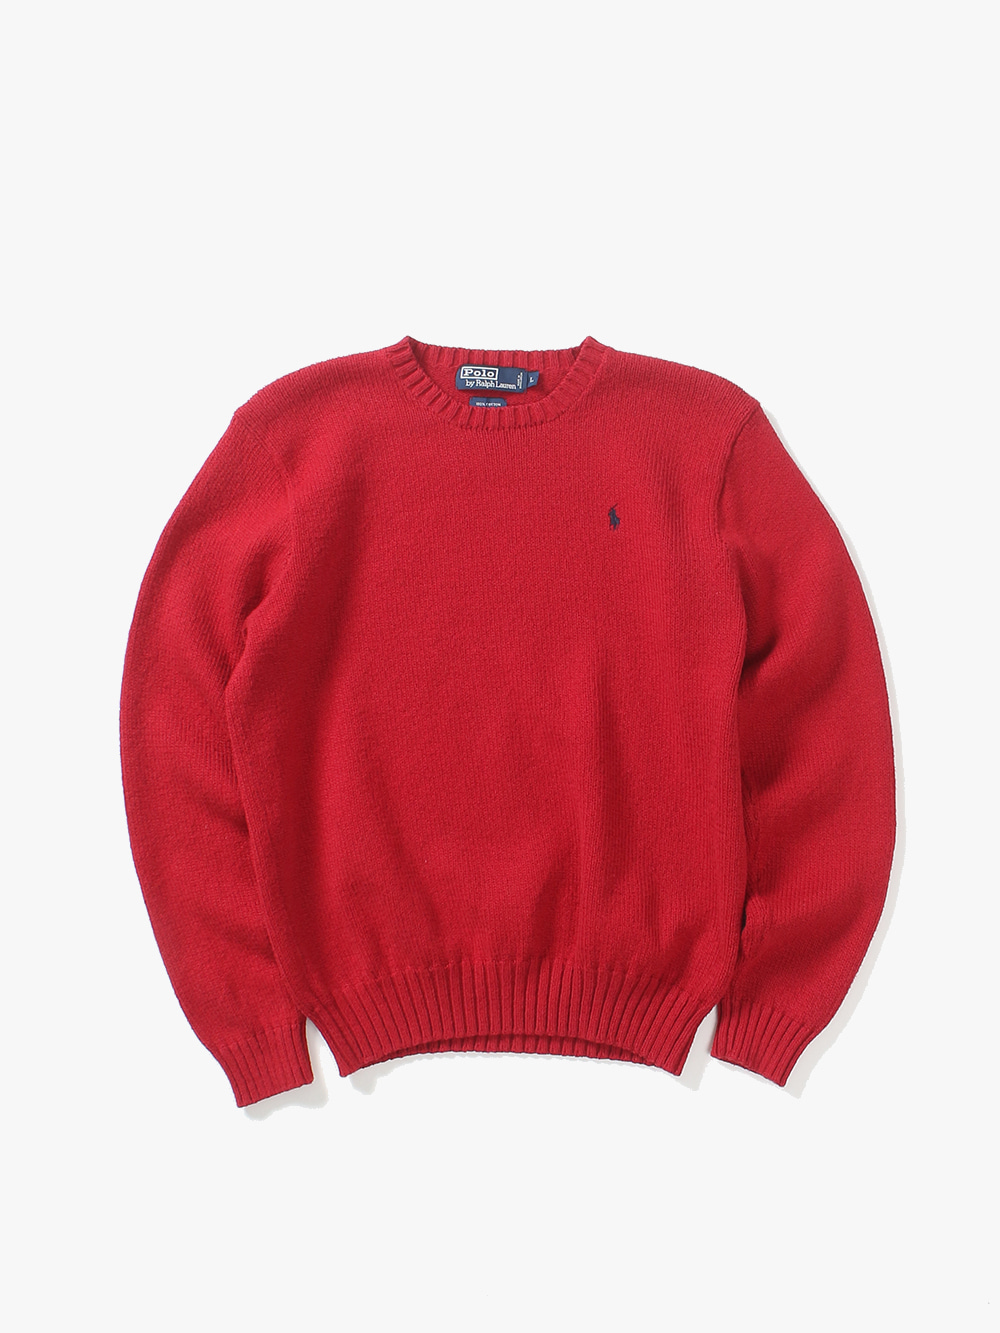 [ L ] Polo Ralph Lauren Sweater (6366)